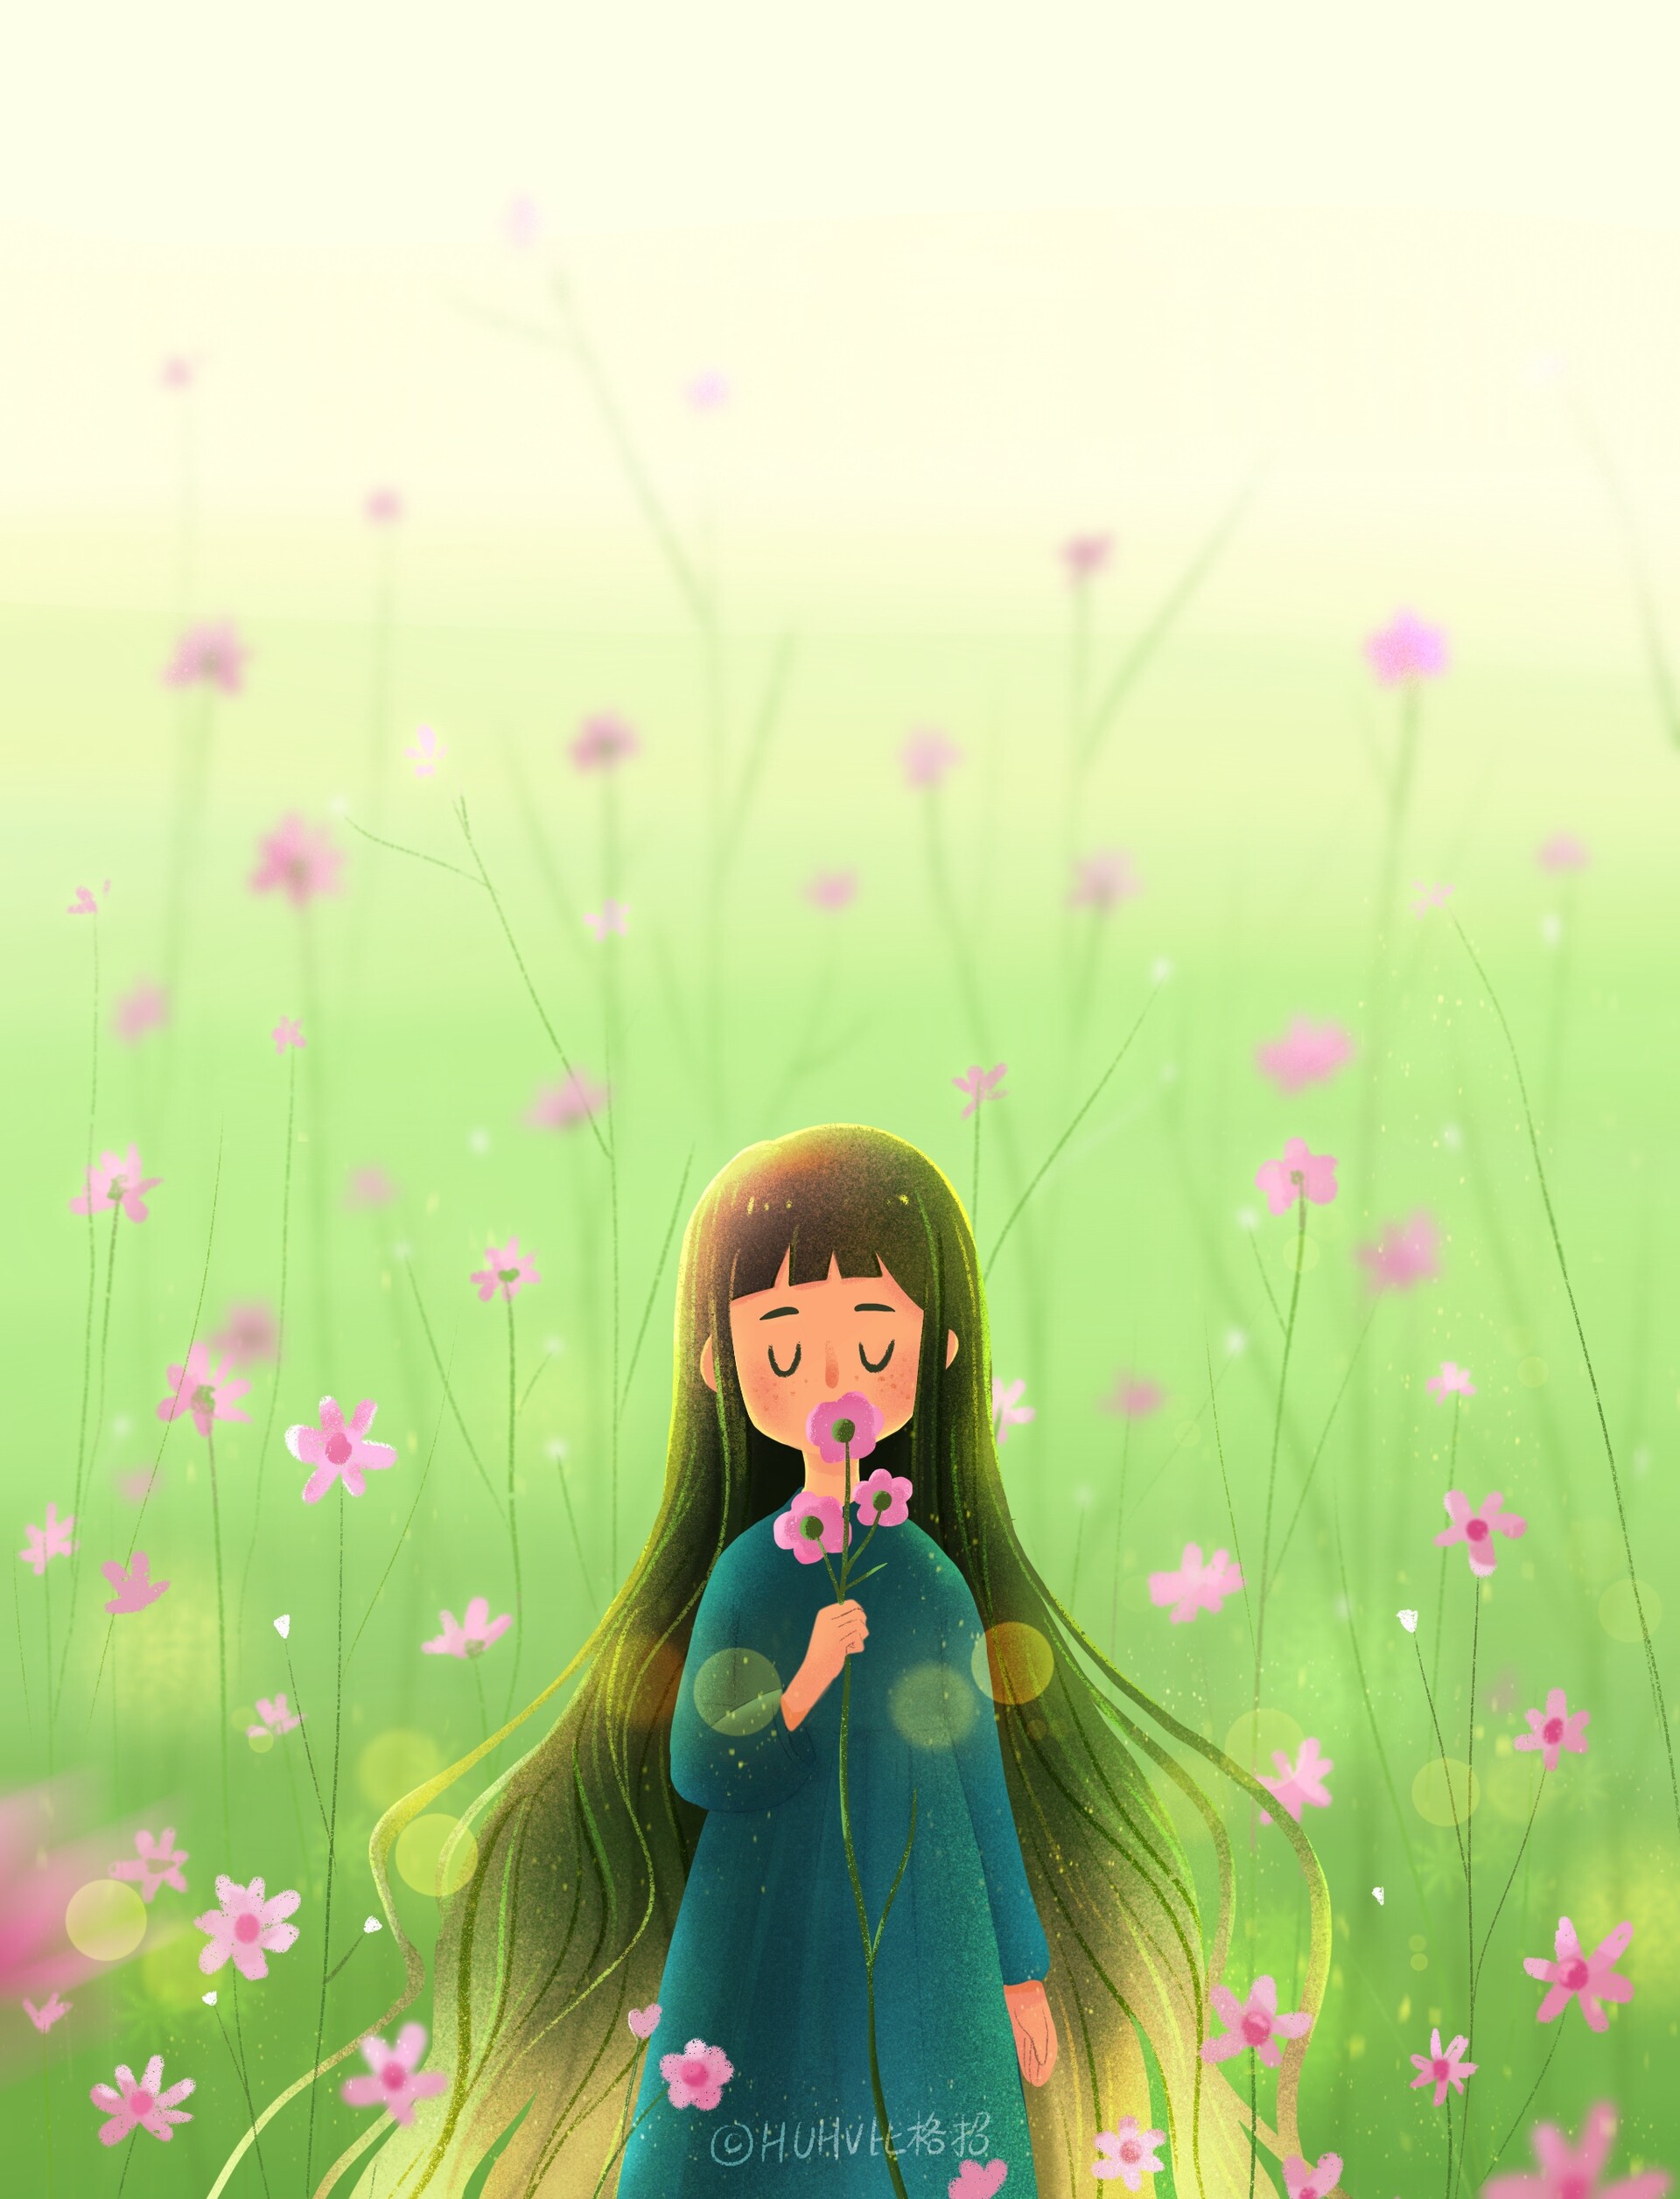 ArtStation - Flower elf